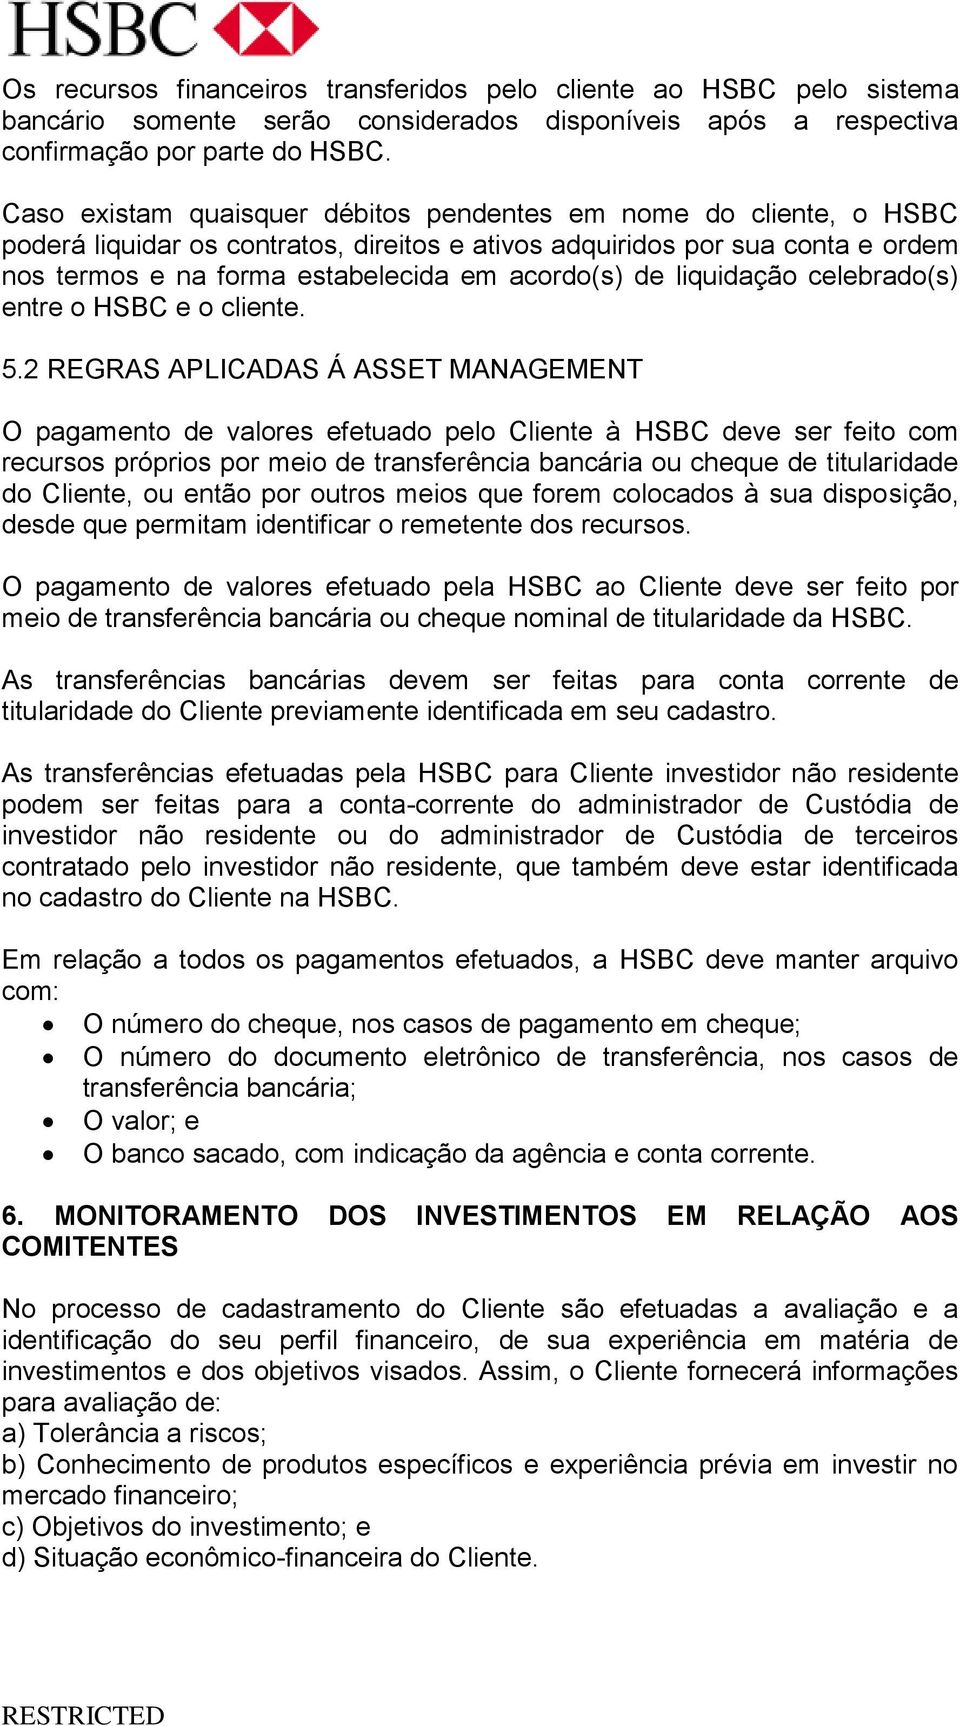 liquidação celebrado(s) entre o HSBC e o cliente. 5.